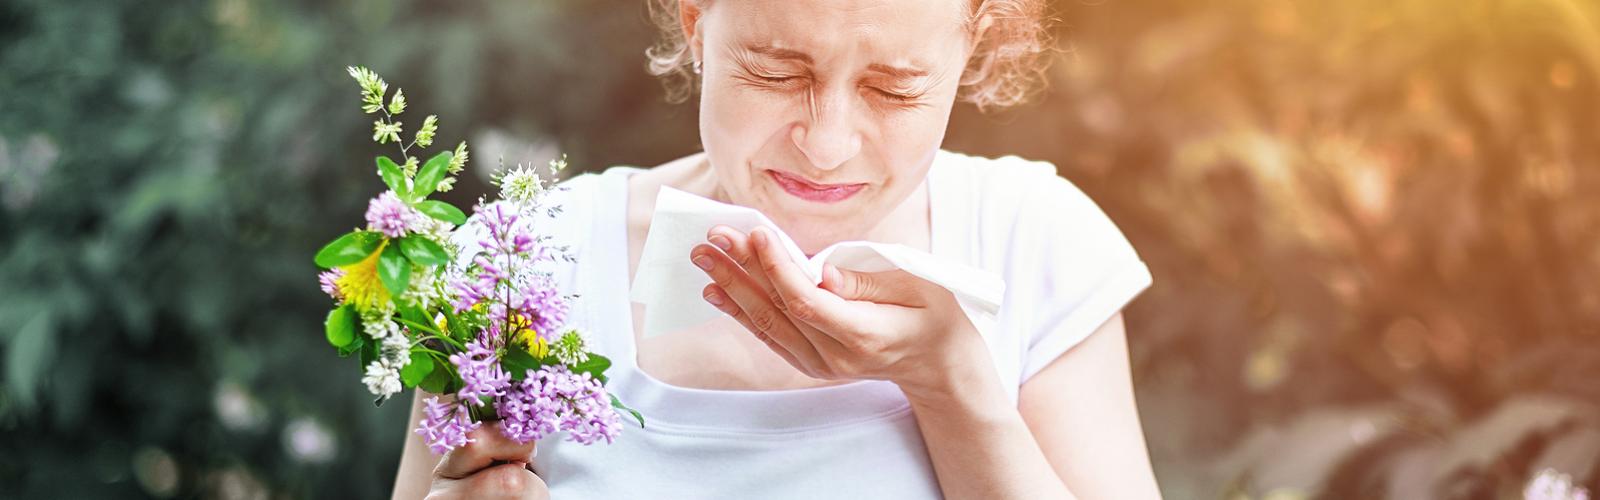 Pollen-Allergy-Girl-Sneezing